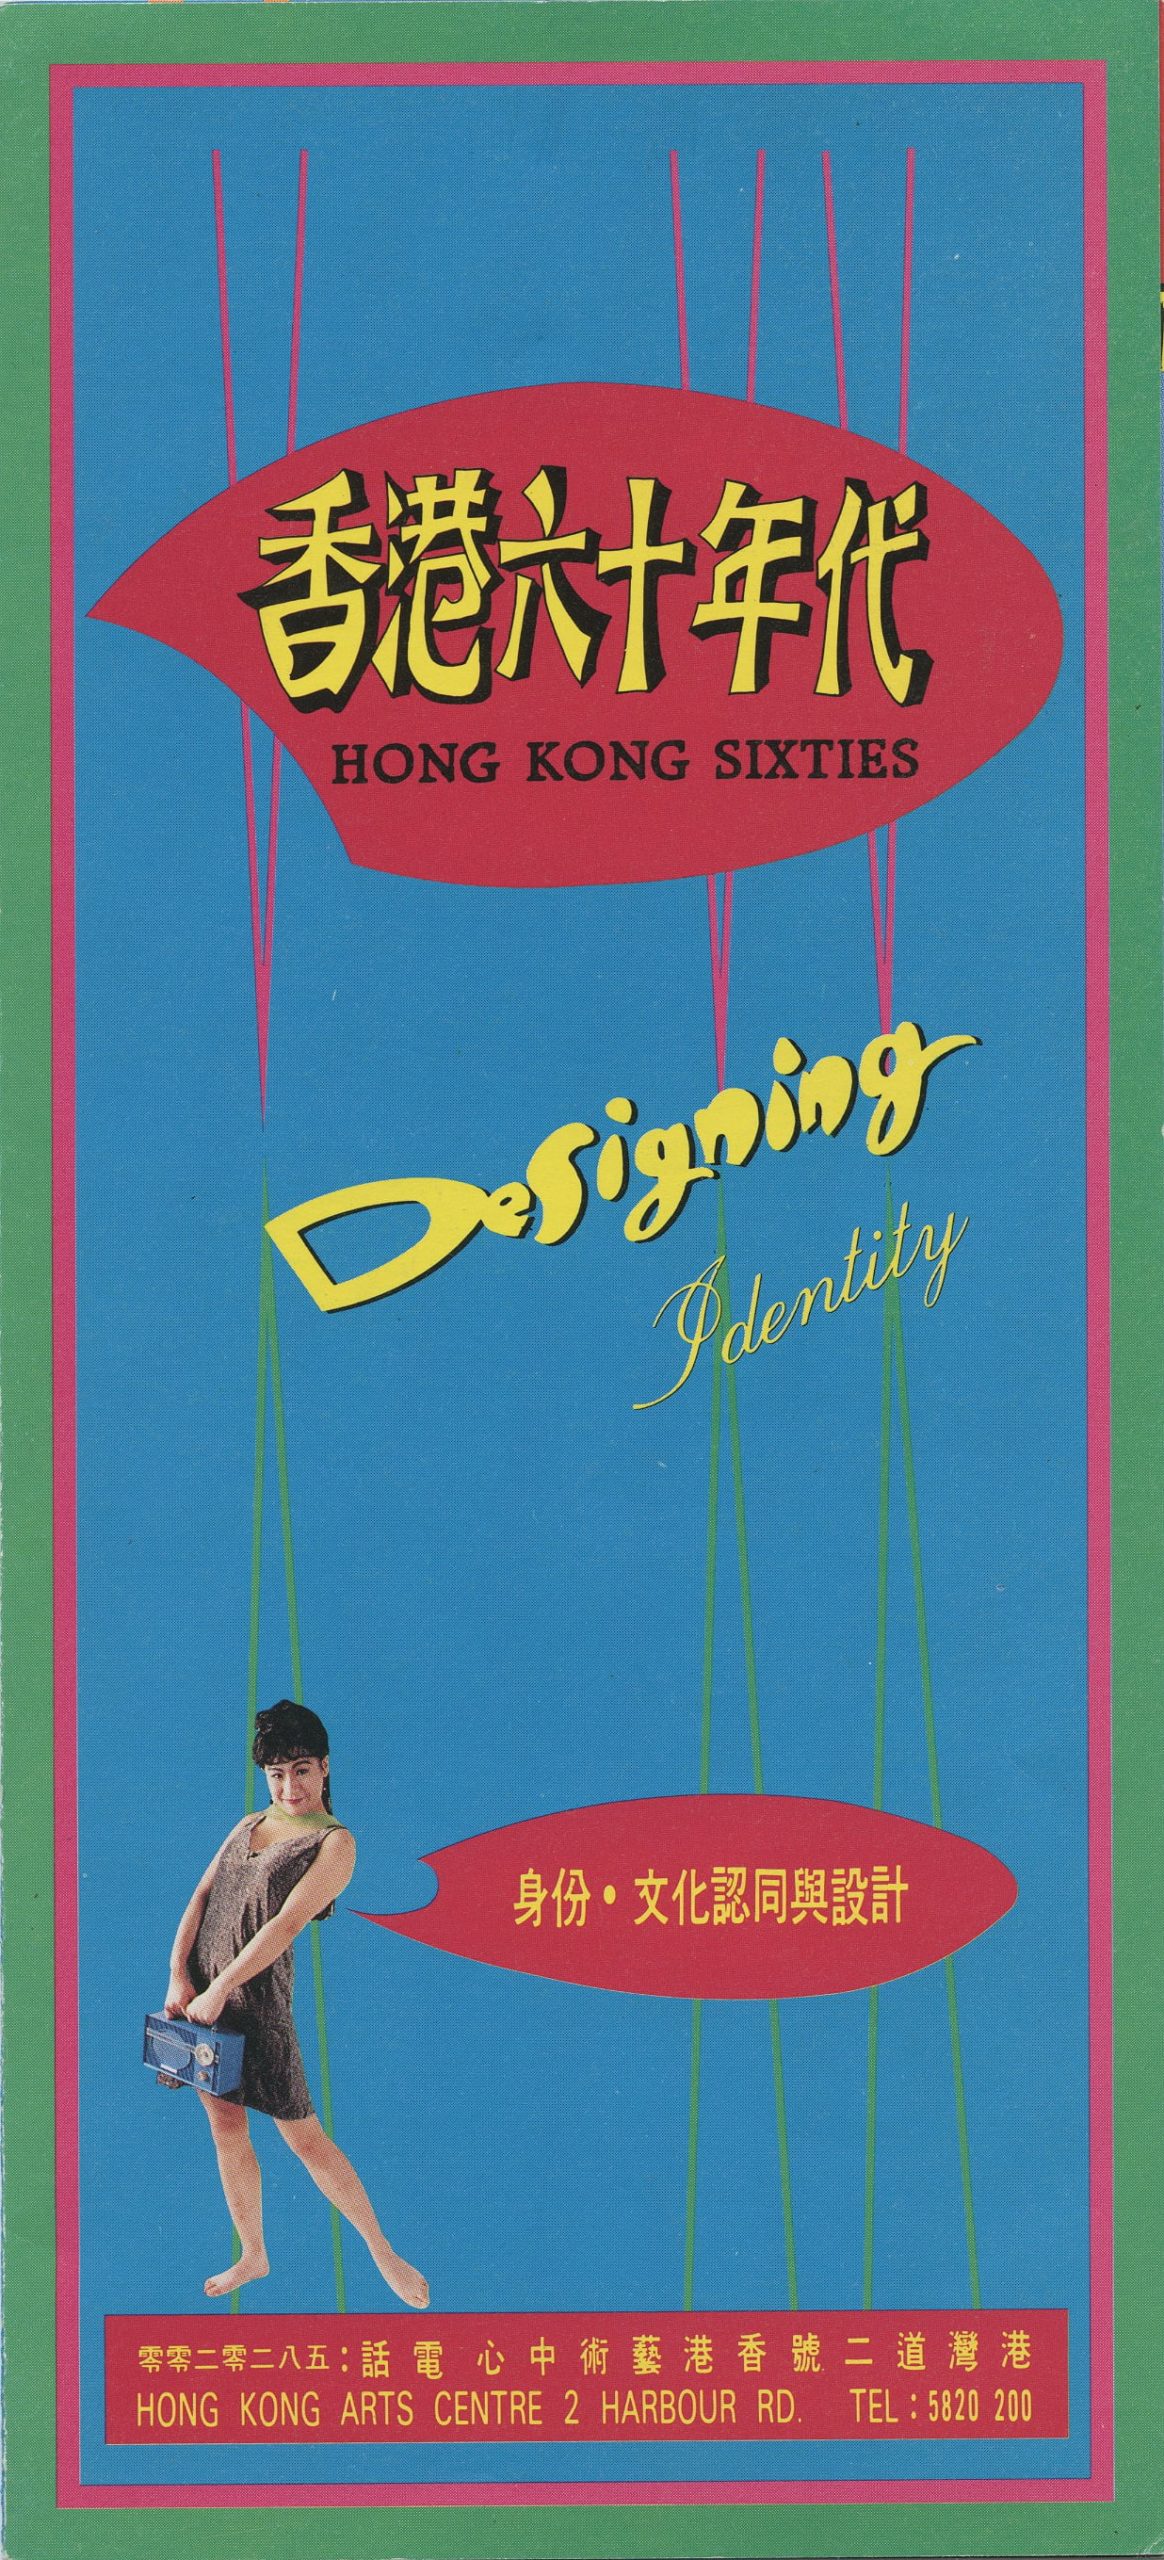 香港60年代 - 身份、文化認同與設計